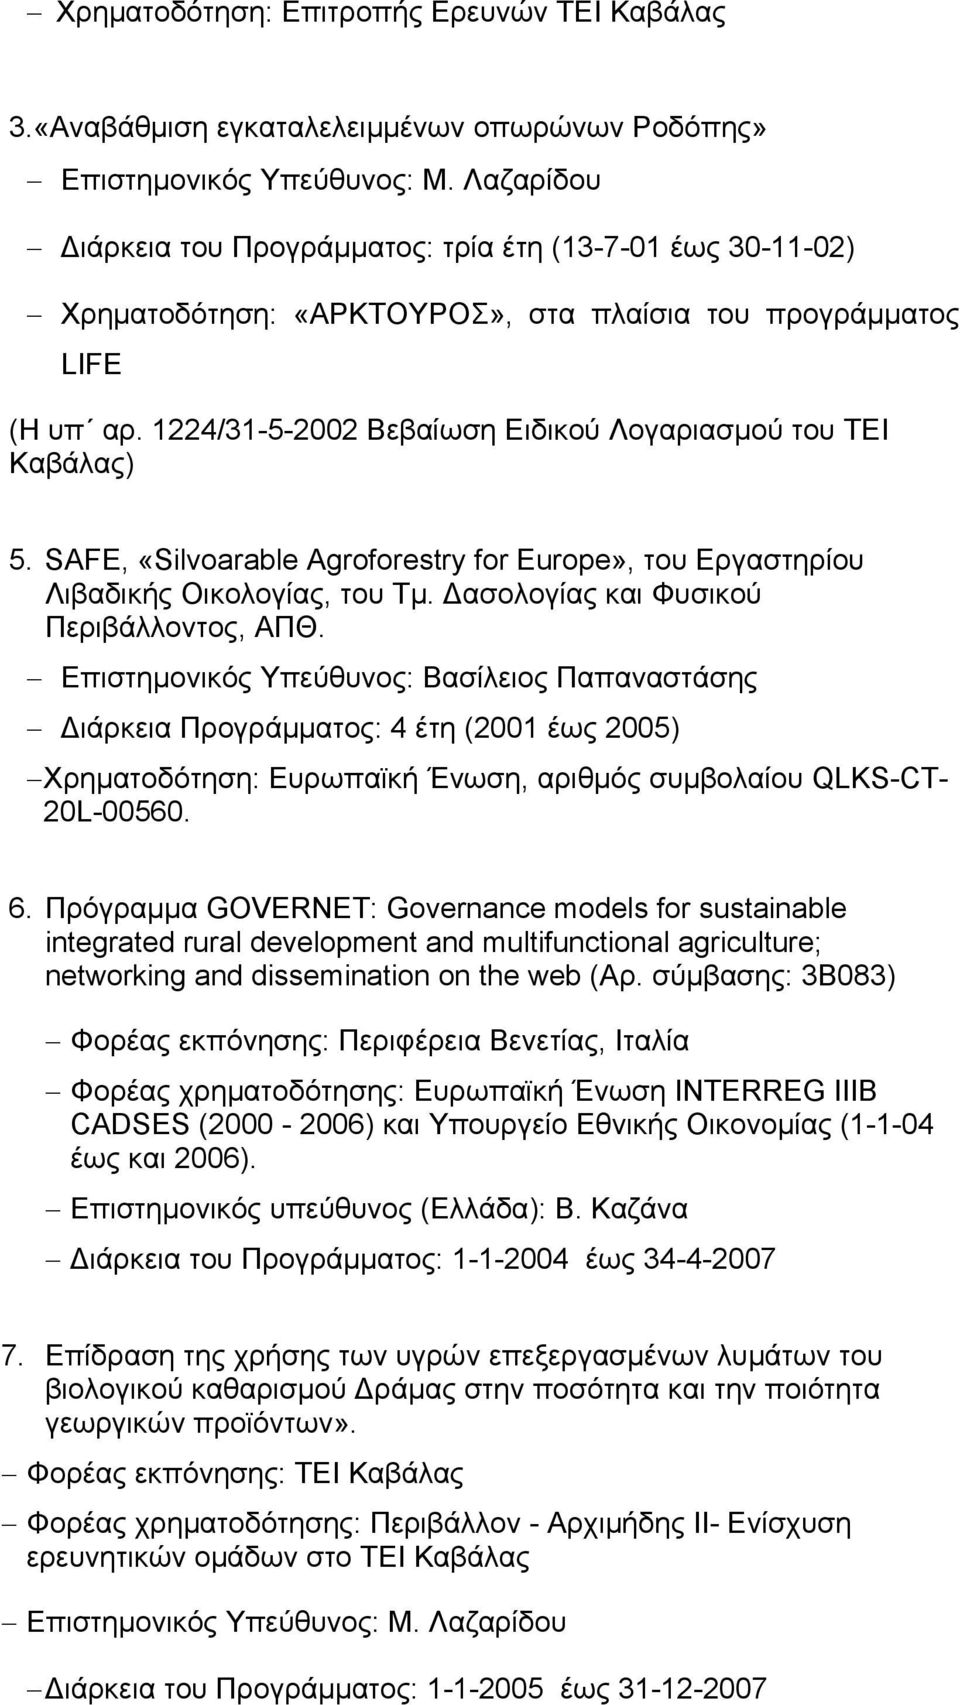 1224/31-5-2002 Βεβαίωση Ειδικού Λογαριασμού του ΤΕΙ Καβάλας) 5. SAFE, «Silvoarable Agroforestry for Europe», του Εργαστηρίου Λιβαδικής Οικολογίας, του Τμ. Δασολογίας και Φυσικού Περιβάλλοντος, ΑΠΘ.